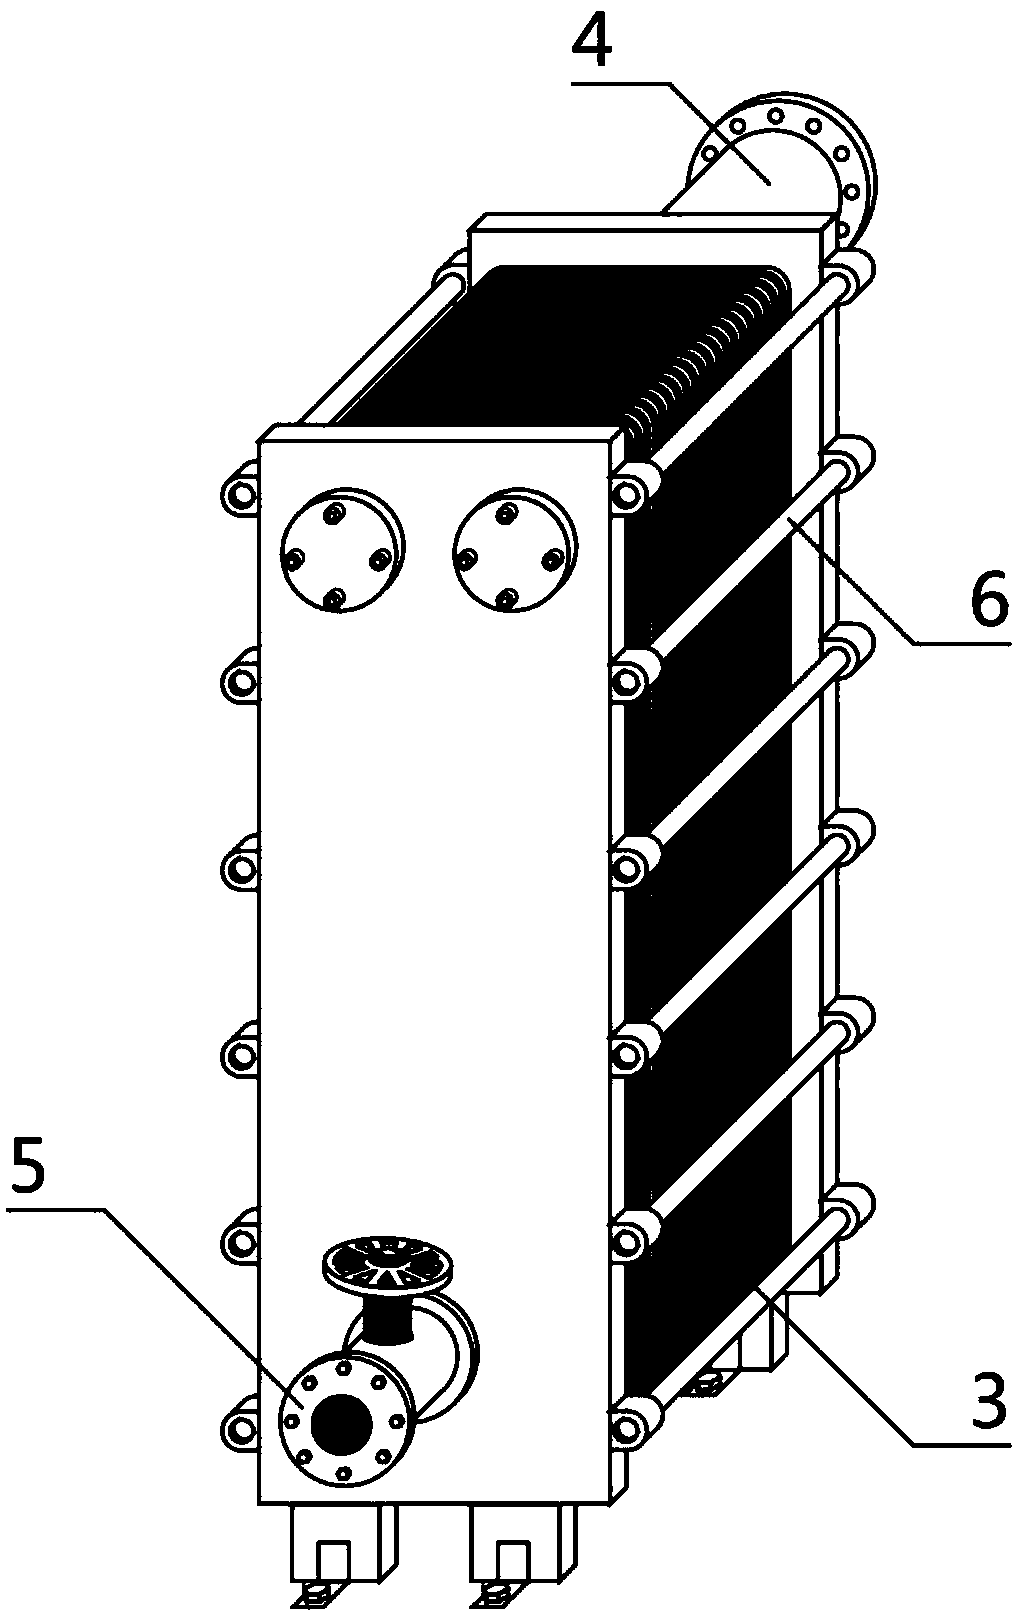 Skid-mounted heat exchanger circulating device